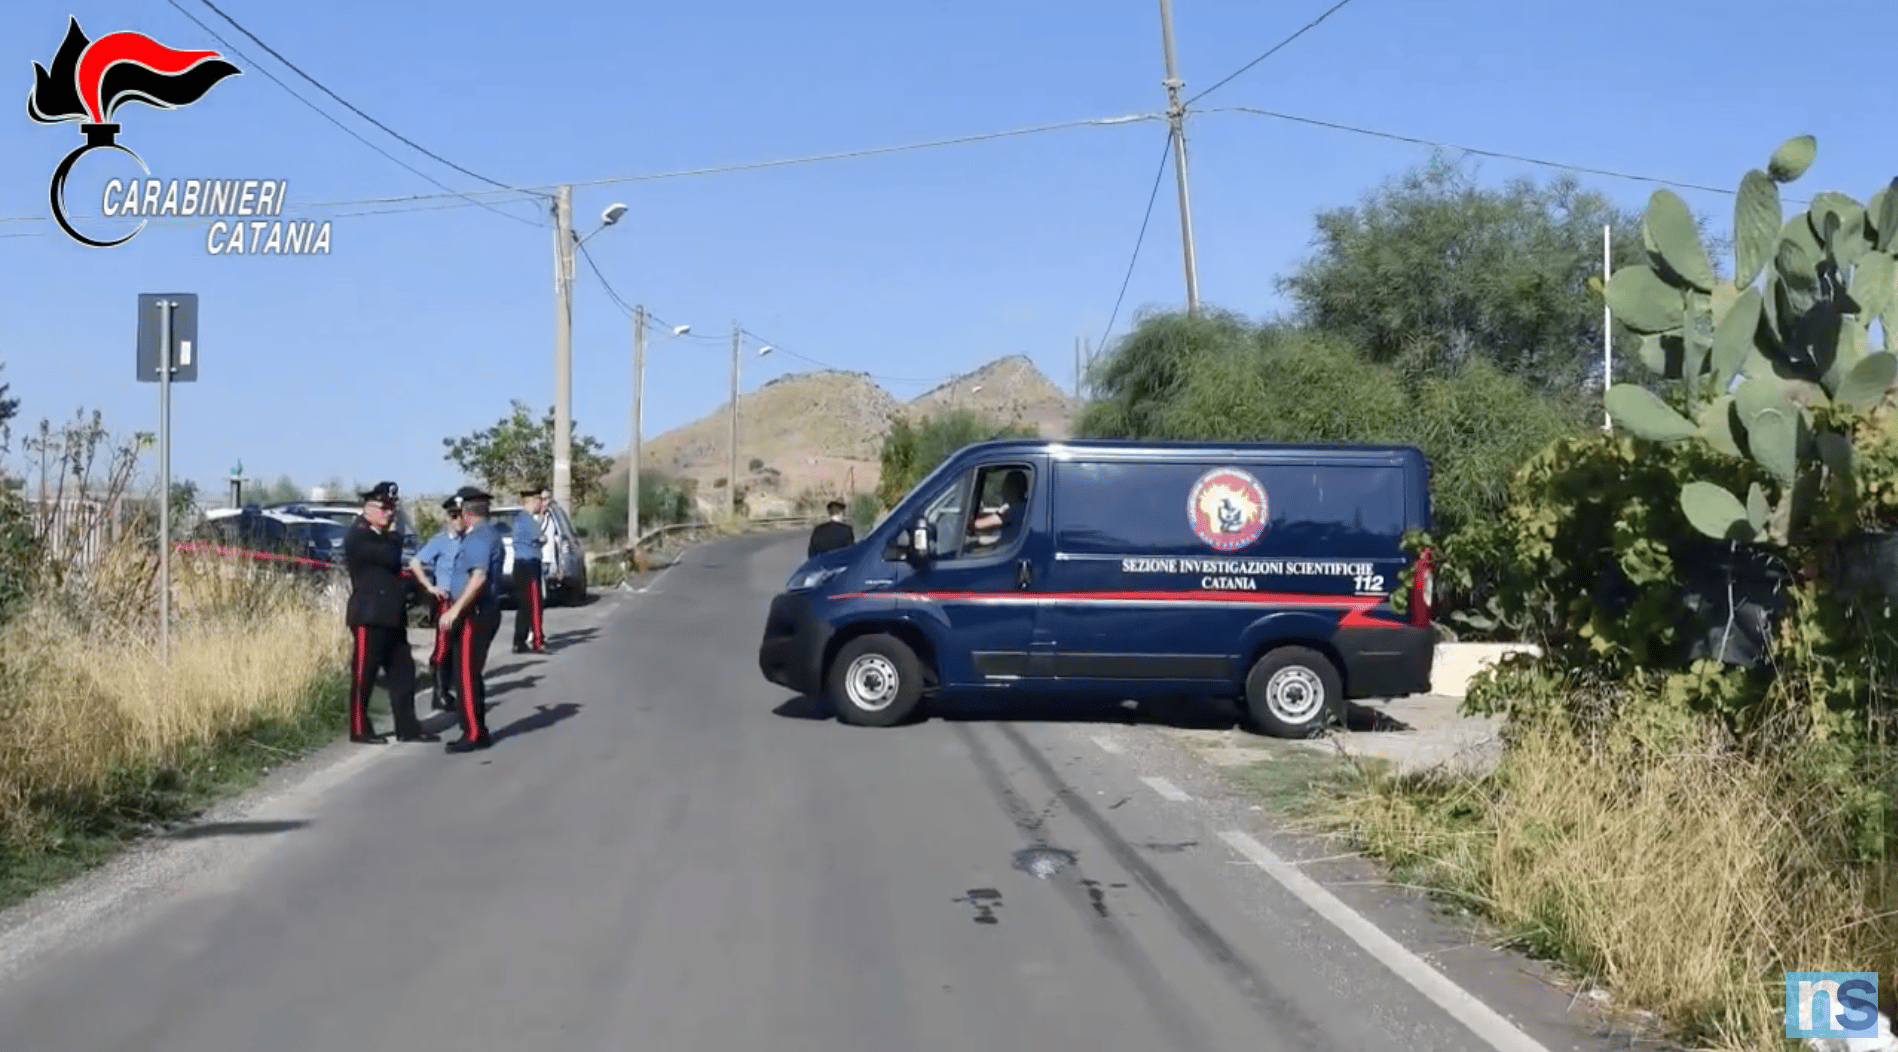 Avvocato del Catanese morto a seguito di una rapina, fermato un 27enne in fuga dall’Italia